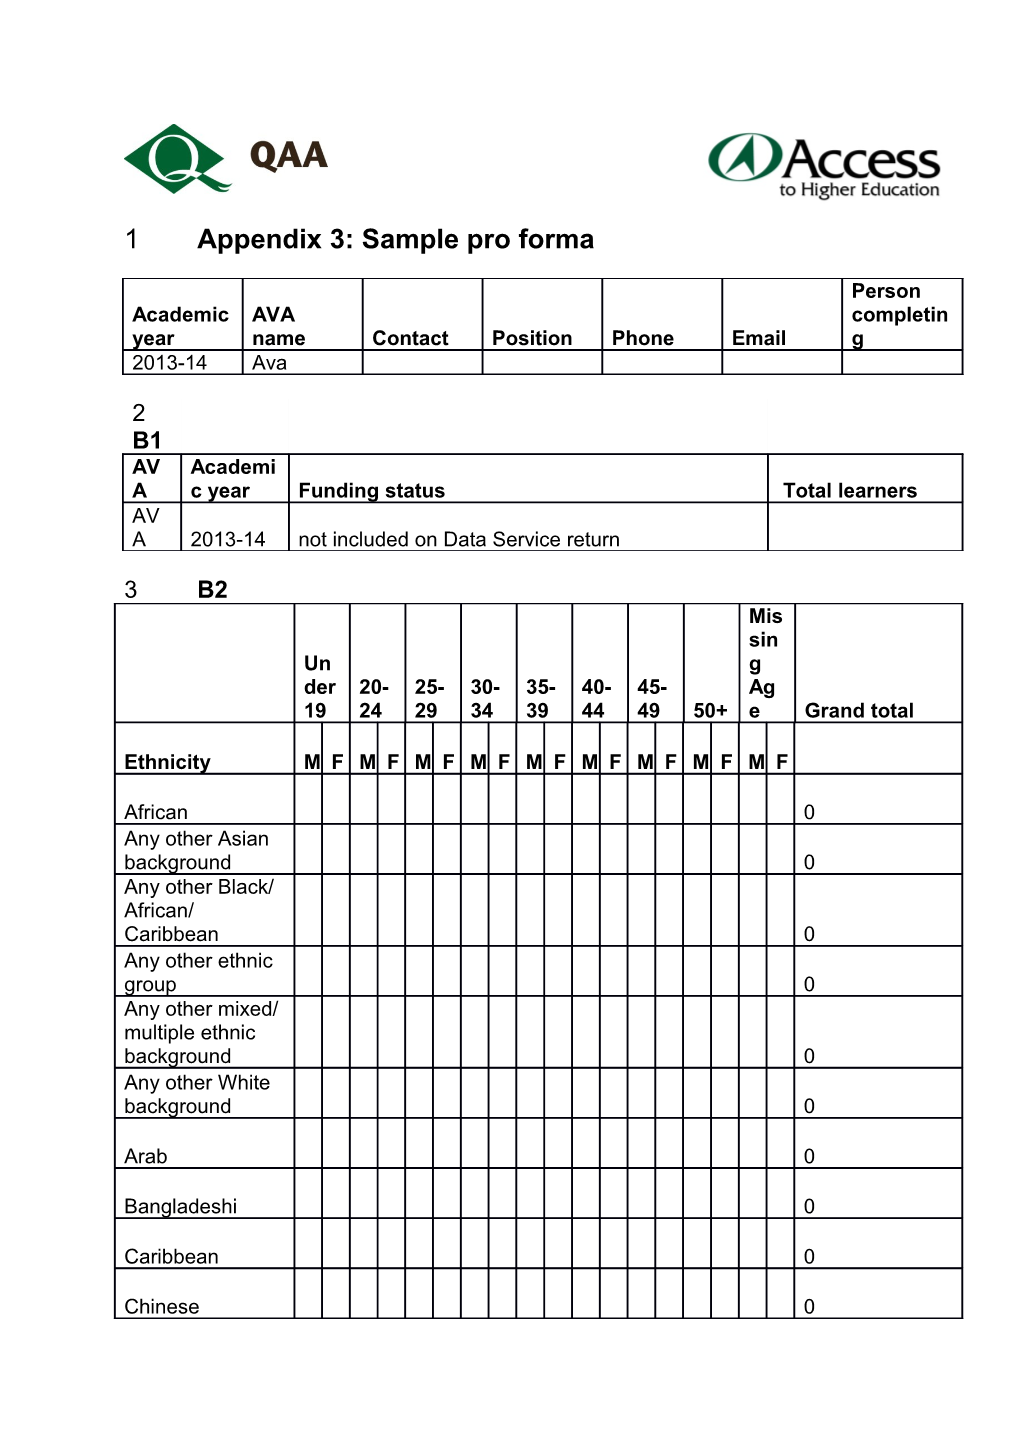 Appendix 3: Sample Pro Forma